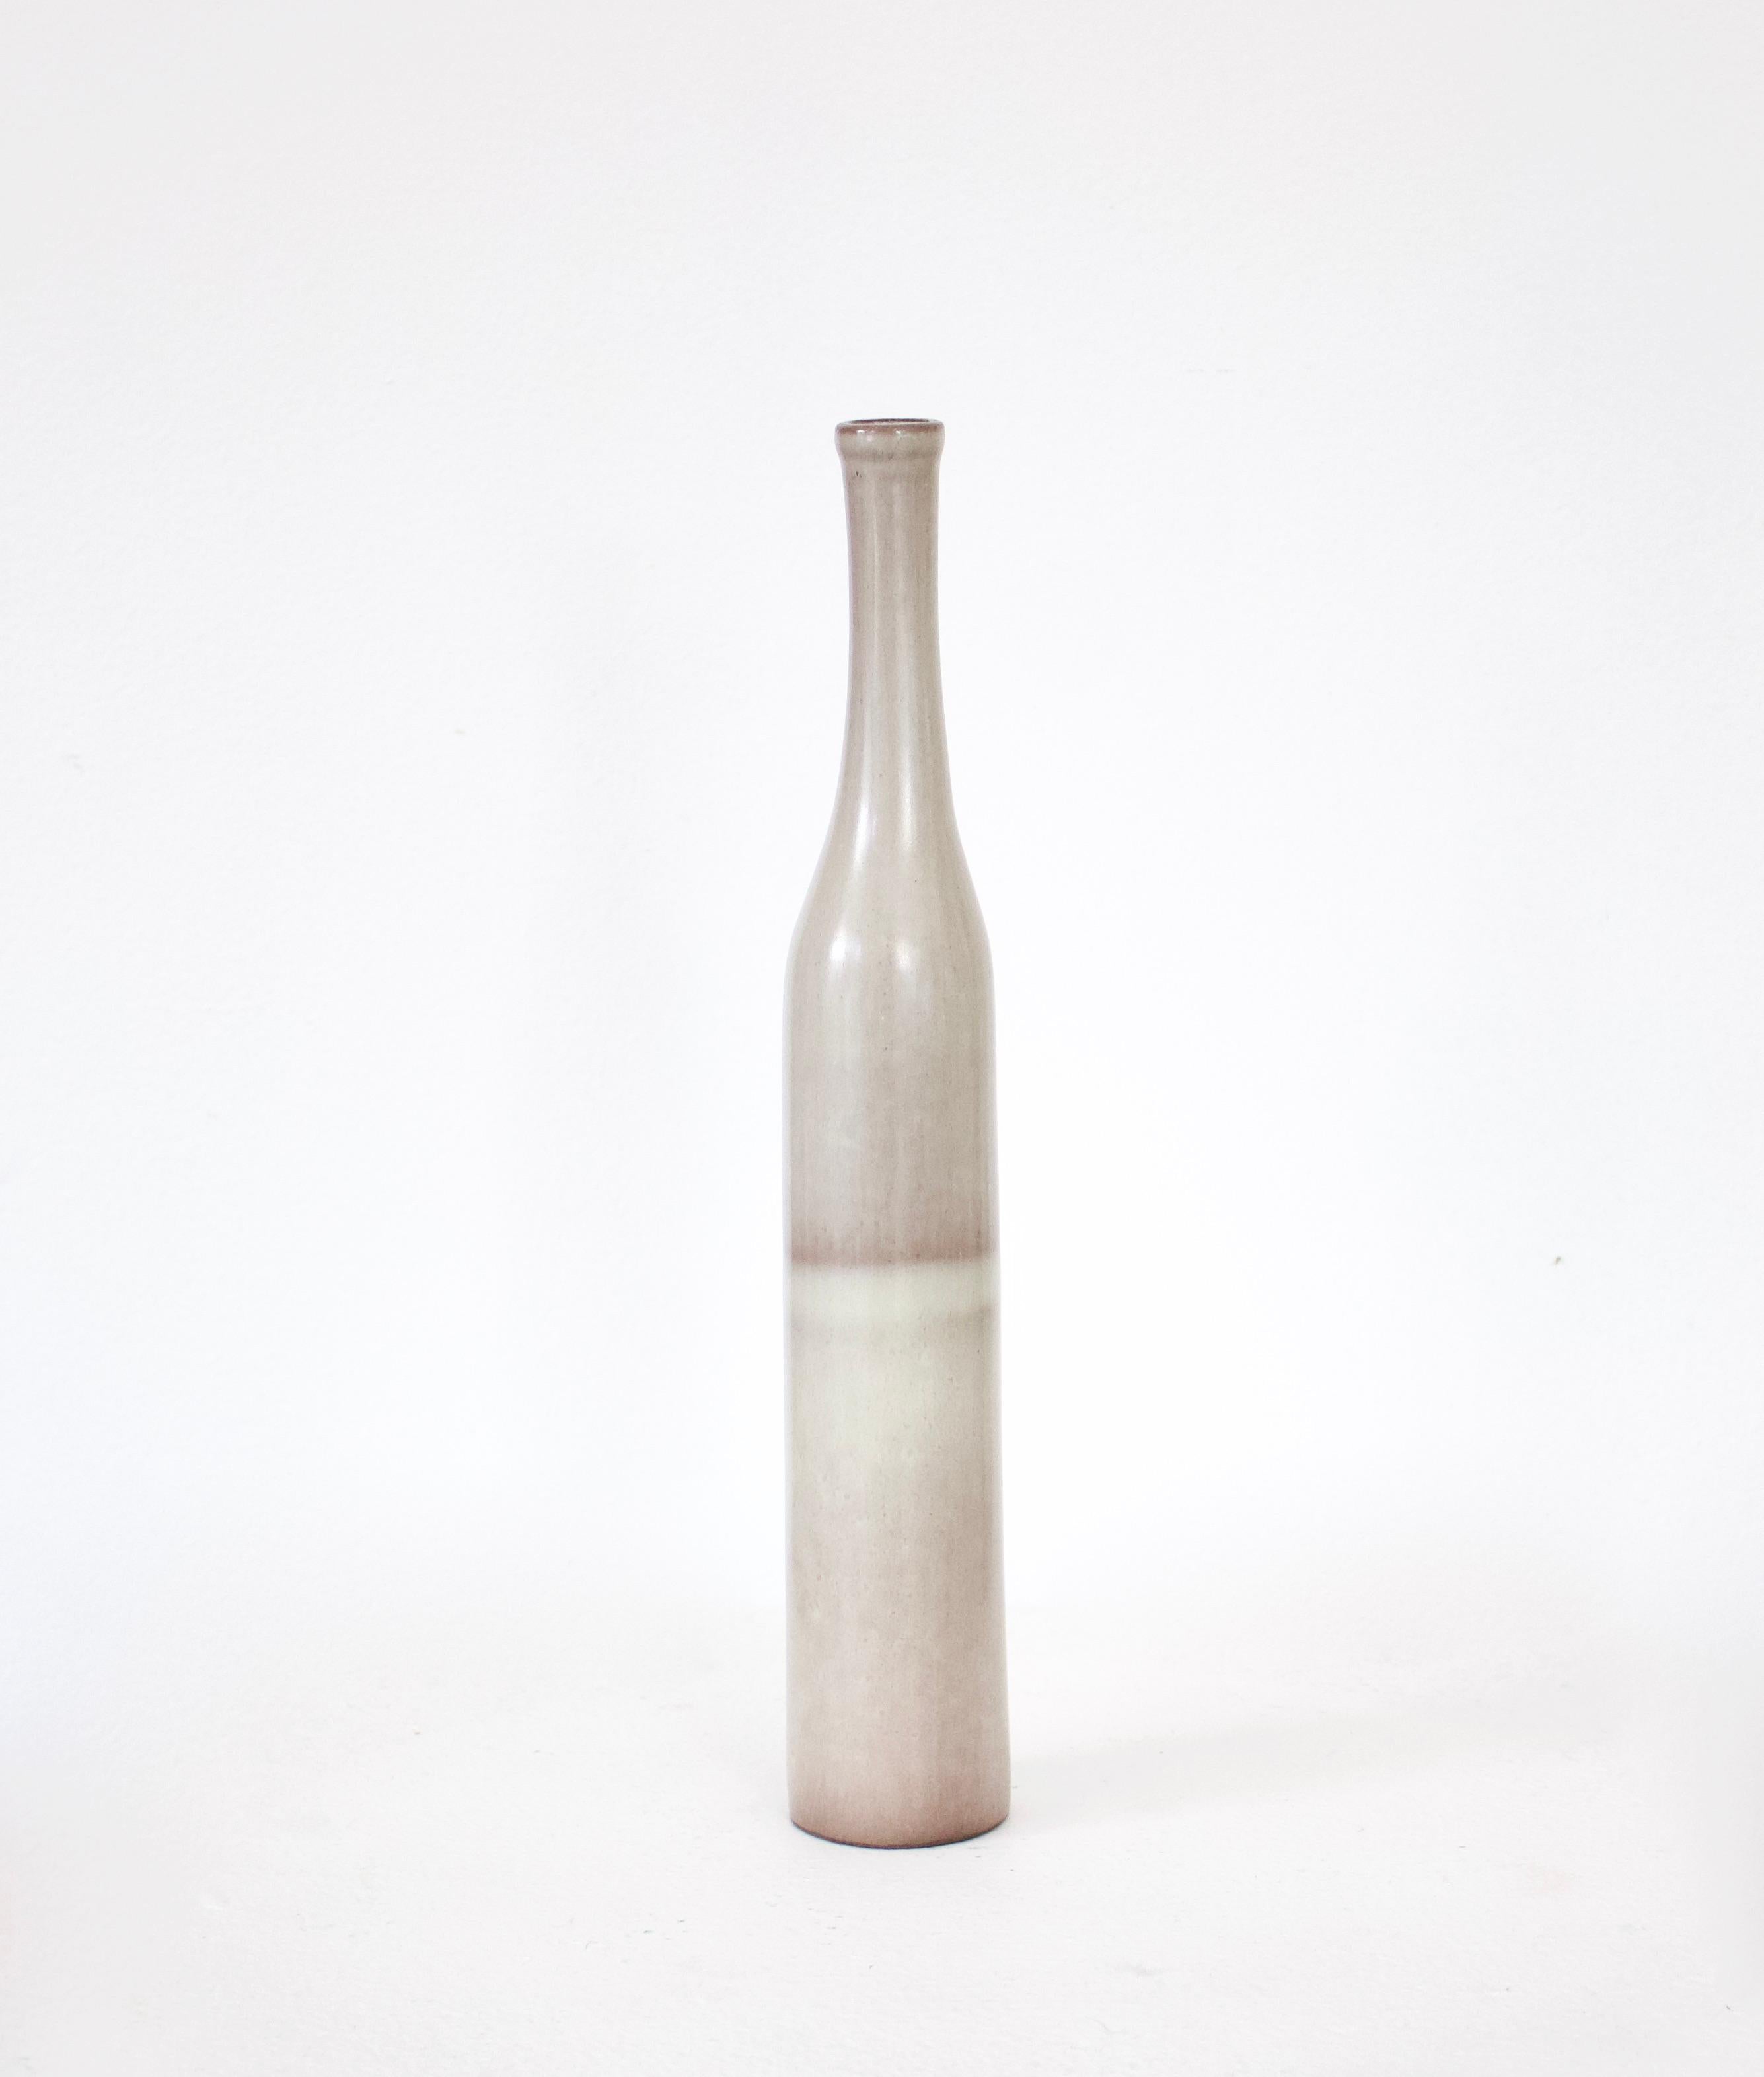 Eine ikonische Flaschenform von den französischen Keramikkünstlern Jacques und Dani Ruelland. Ein blassgrauer Körper mit einem Schatten eines Streifens mit cremeweißem Band, der nach oben hin ins blasseste Grau übergeht.